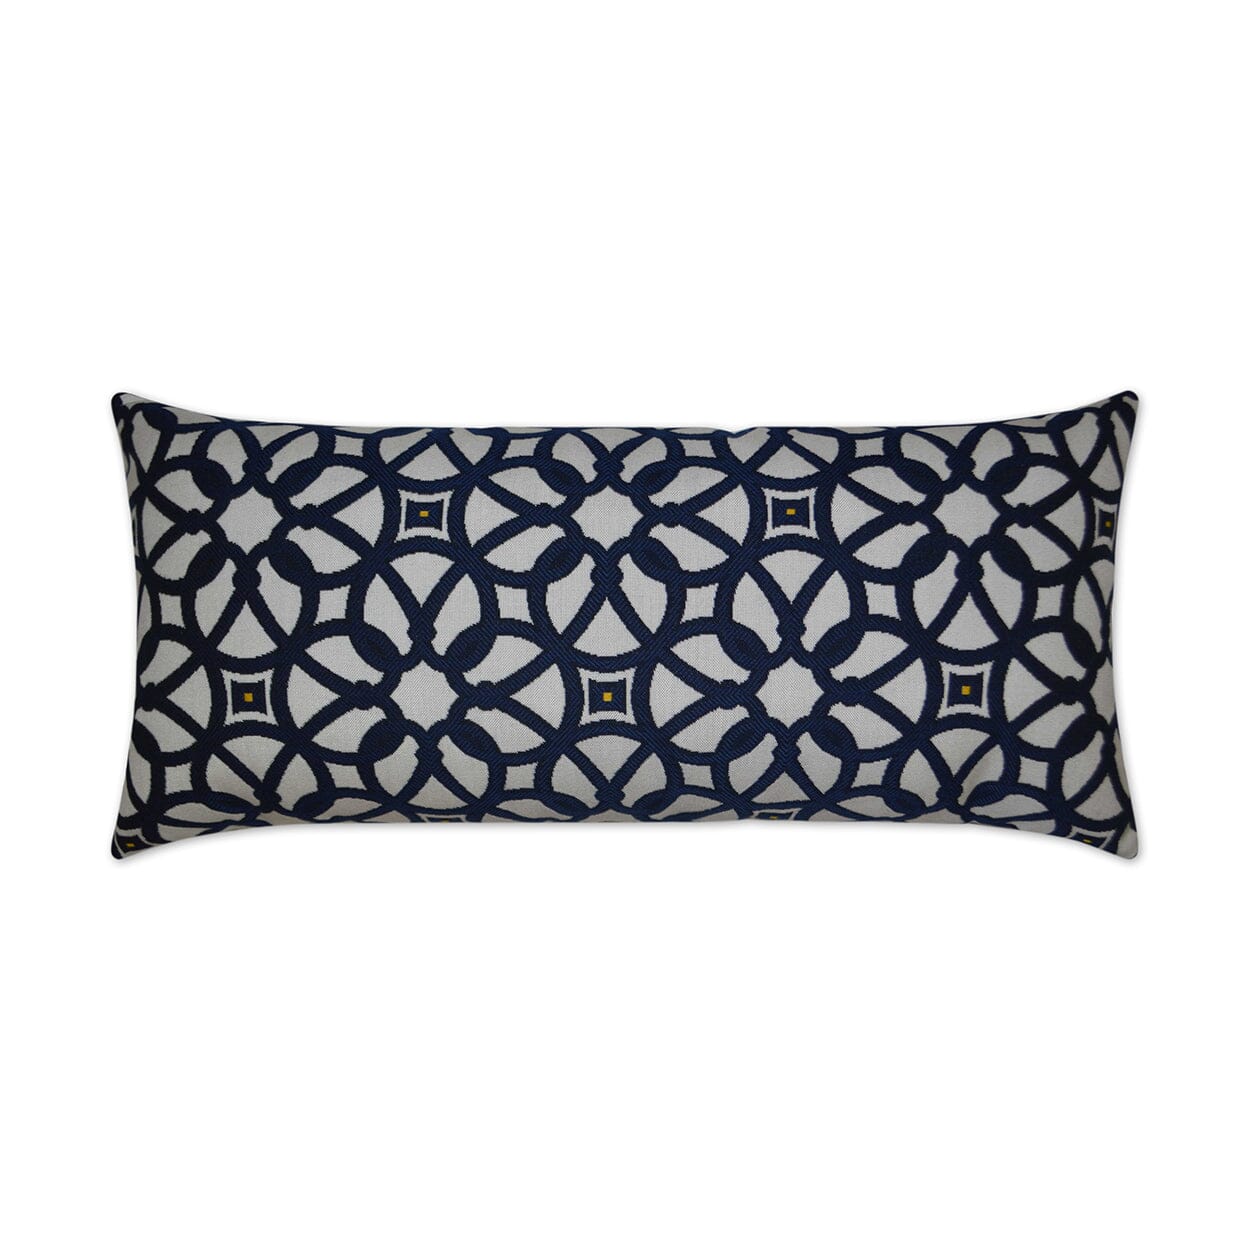 D.V. Kap 12" x 24" Outdoor Lumbar Pillow | Luxe Pillows D.V Kap Outdoor